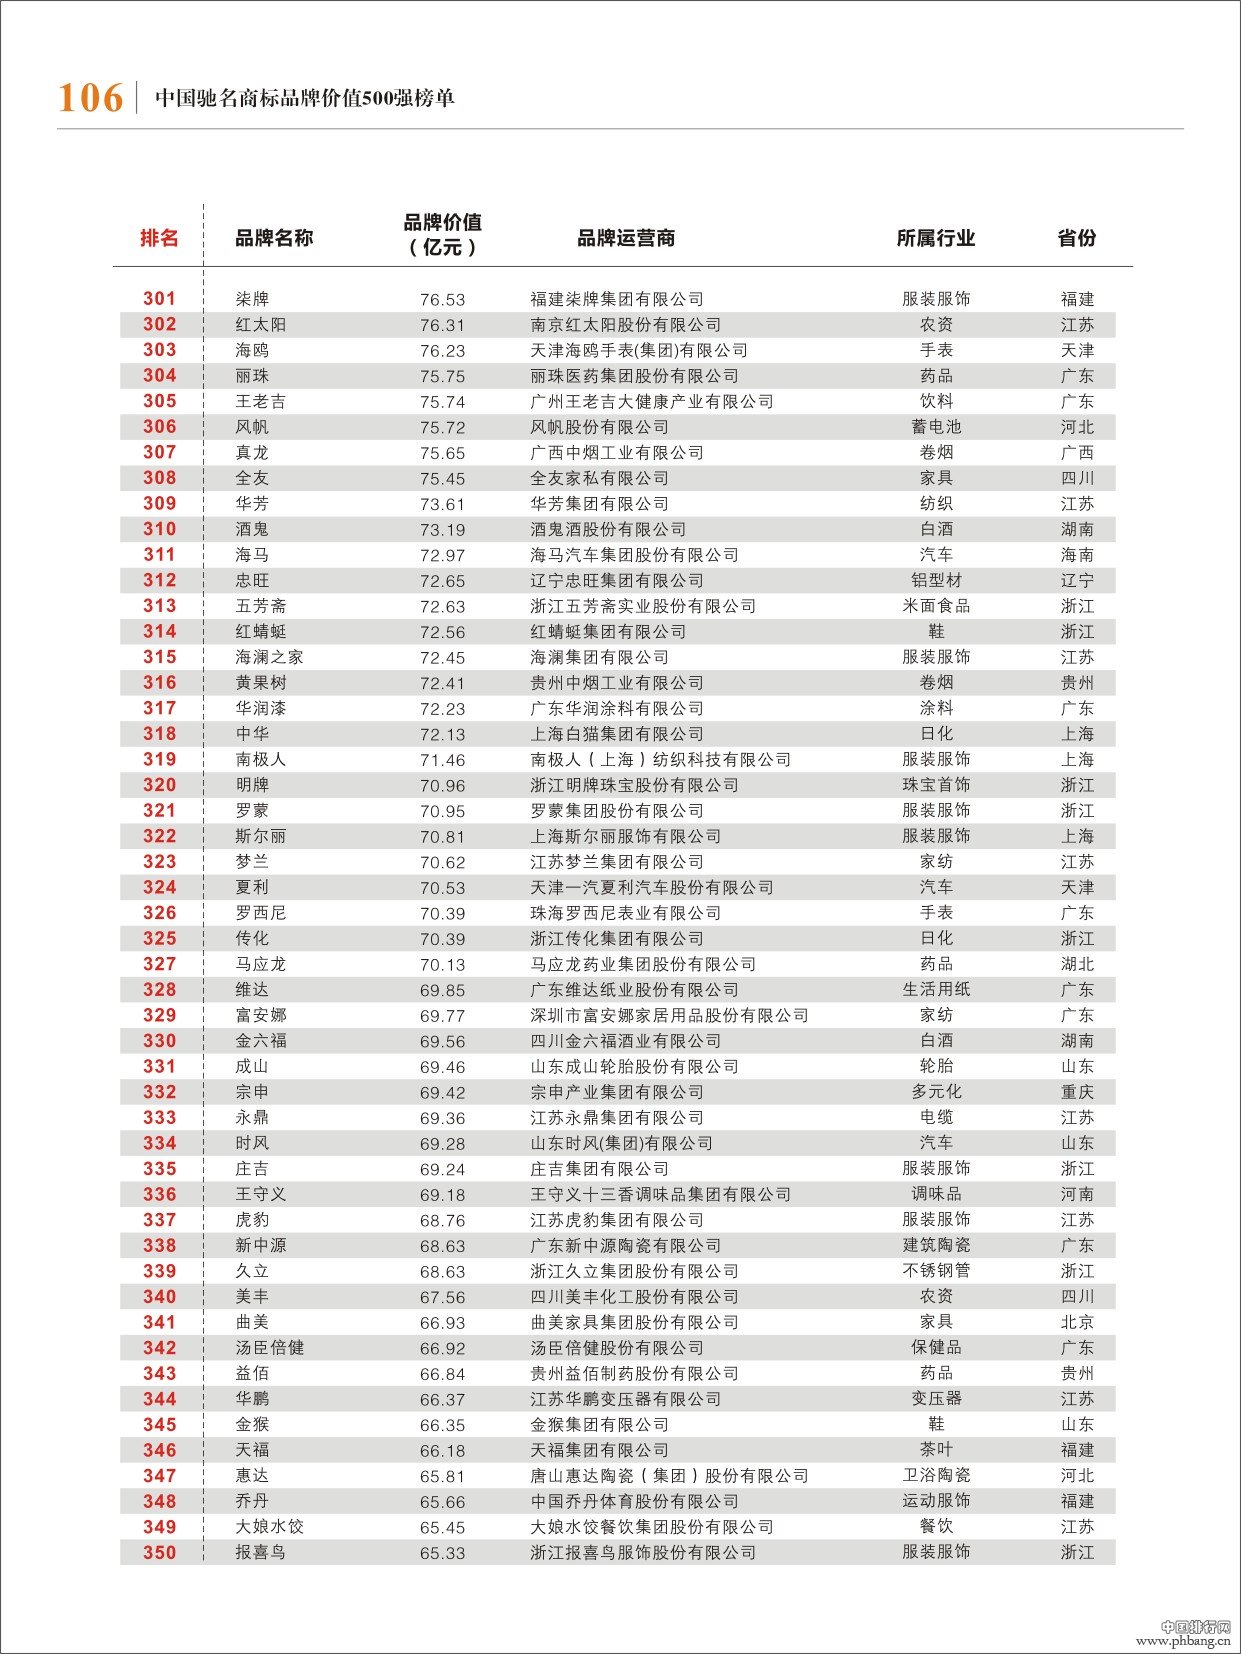 2013年中国驰名商标500强排名